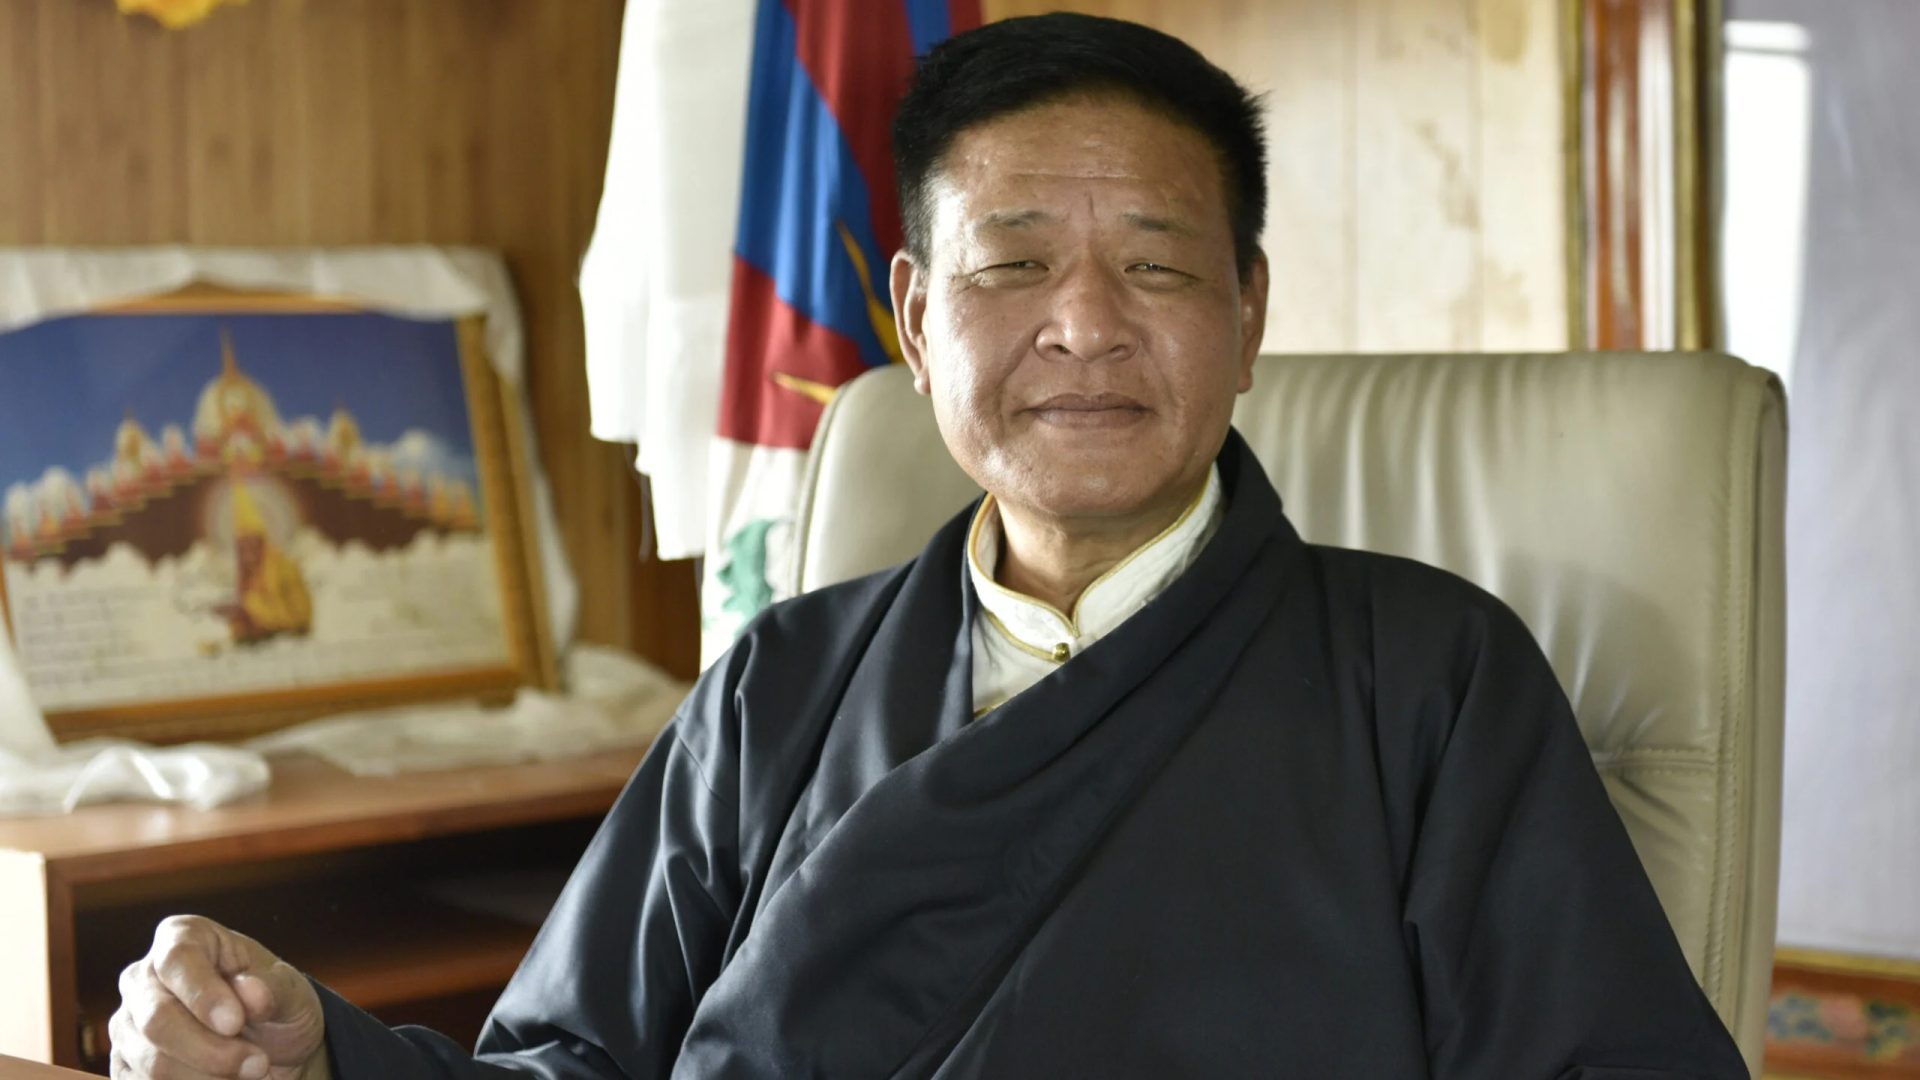 Penpa Tsering, elected Sikyong in 2021